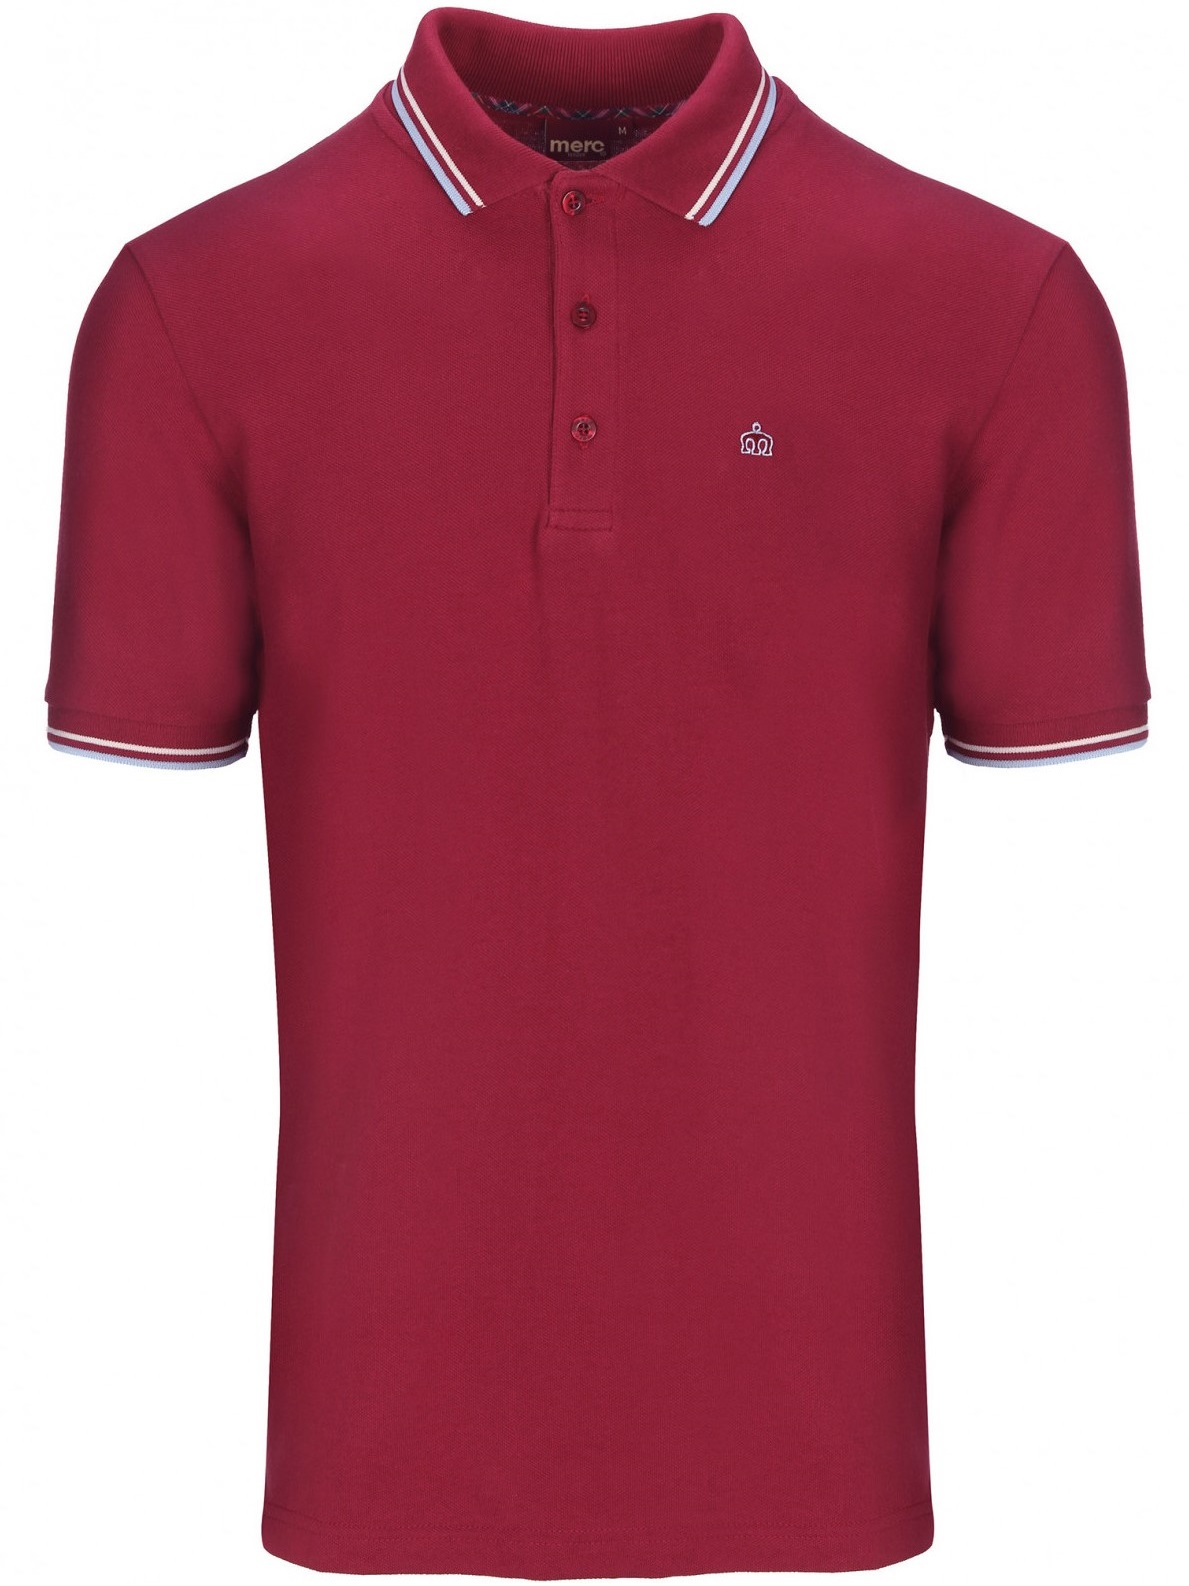 Мужская Рубашка Поло Card с коротким рукавом, классическая, хлопковая (пике), бордовая (claret) — купить в фирменном интернет магазине Merc